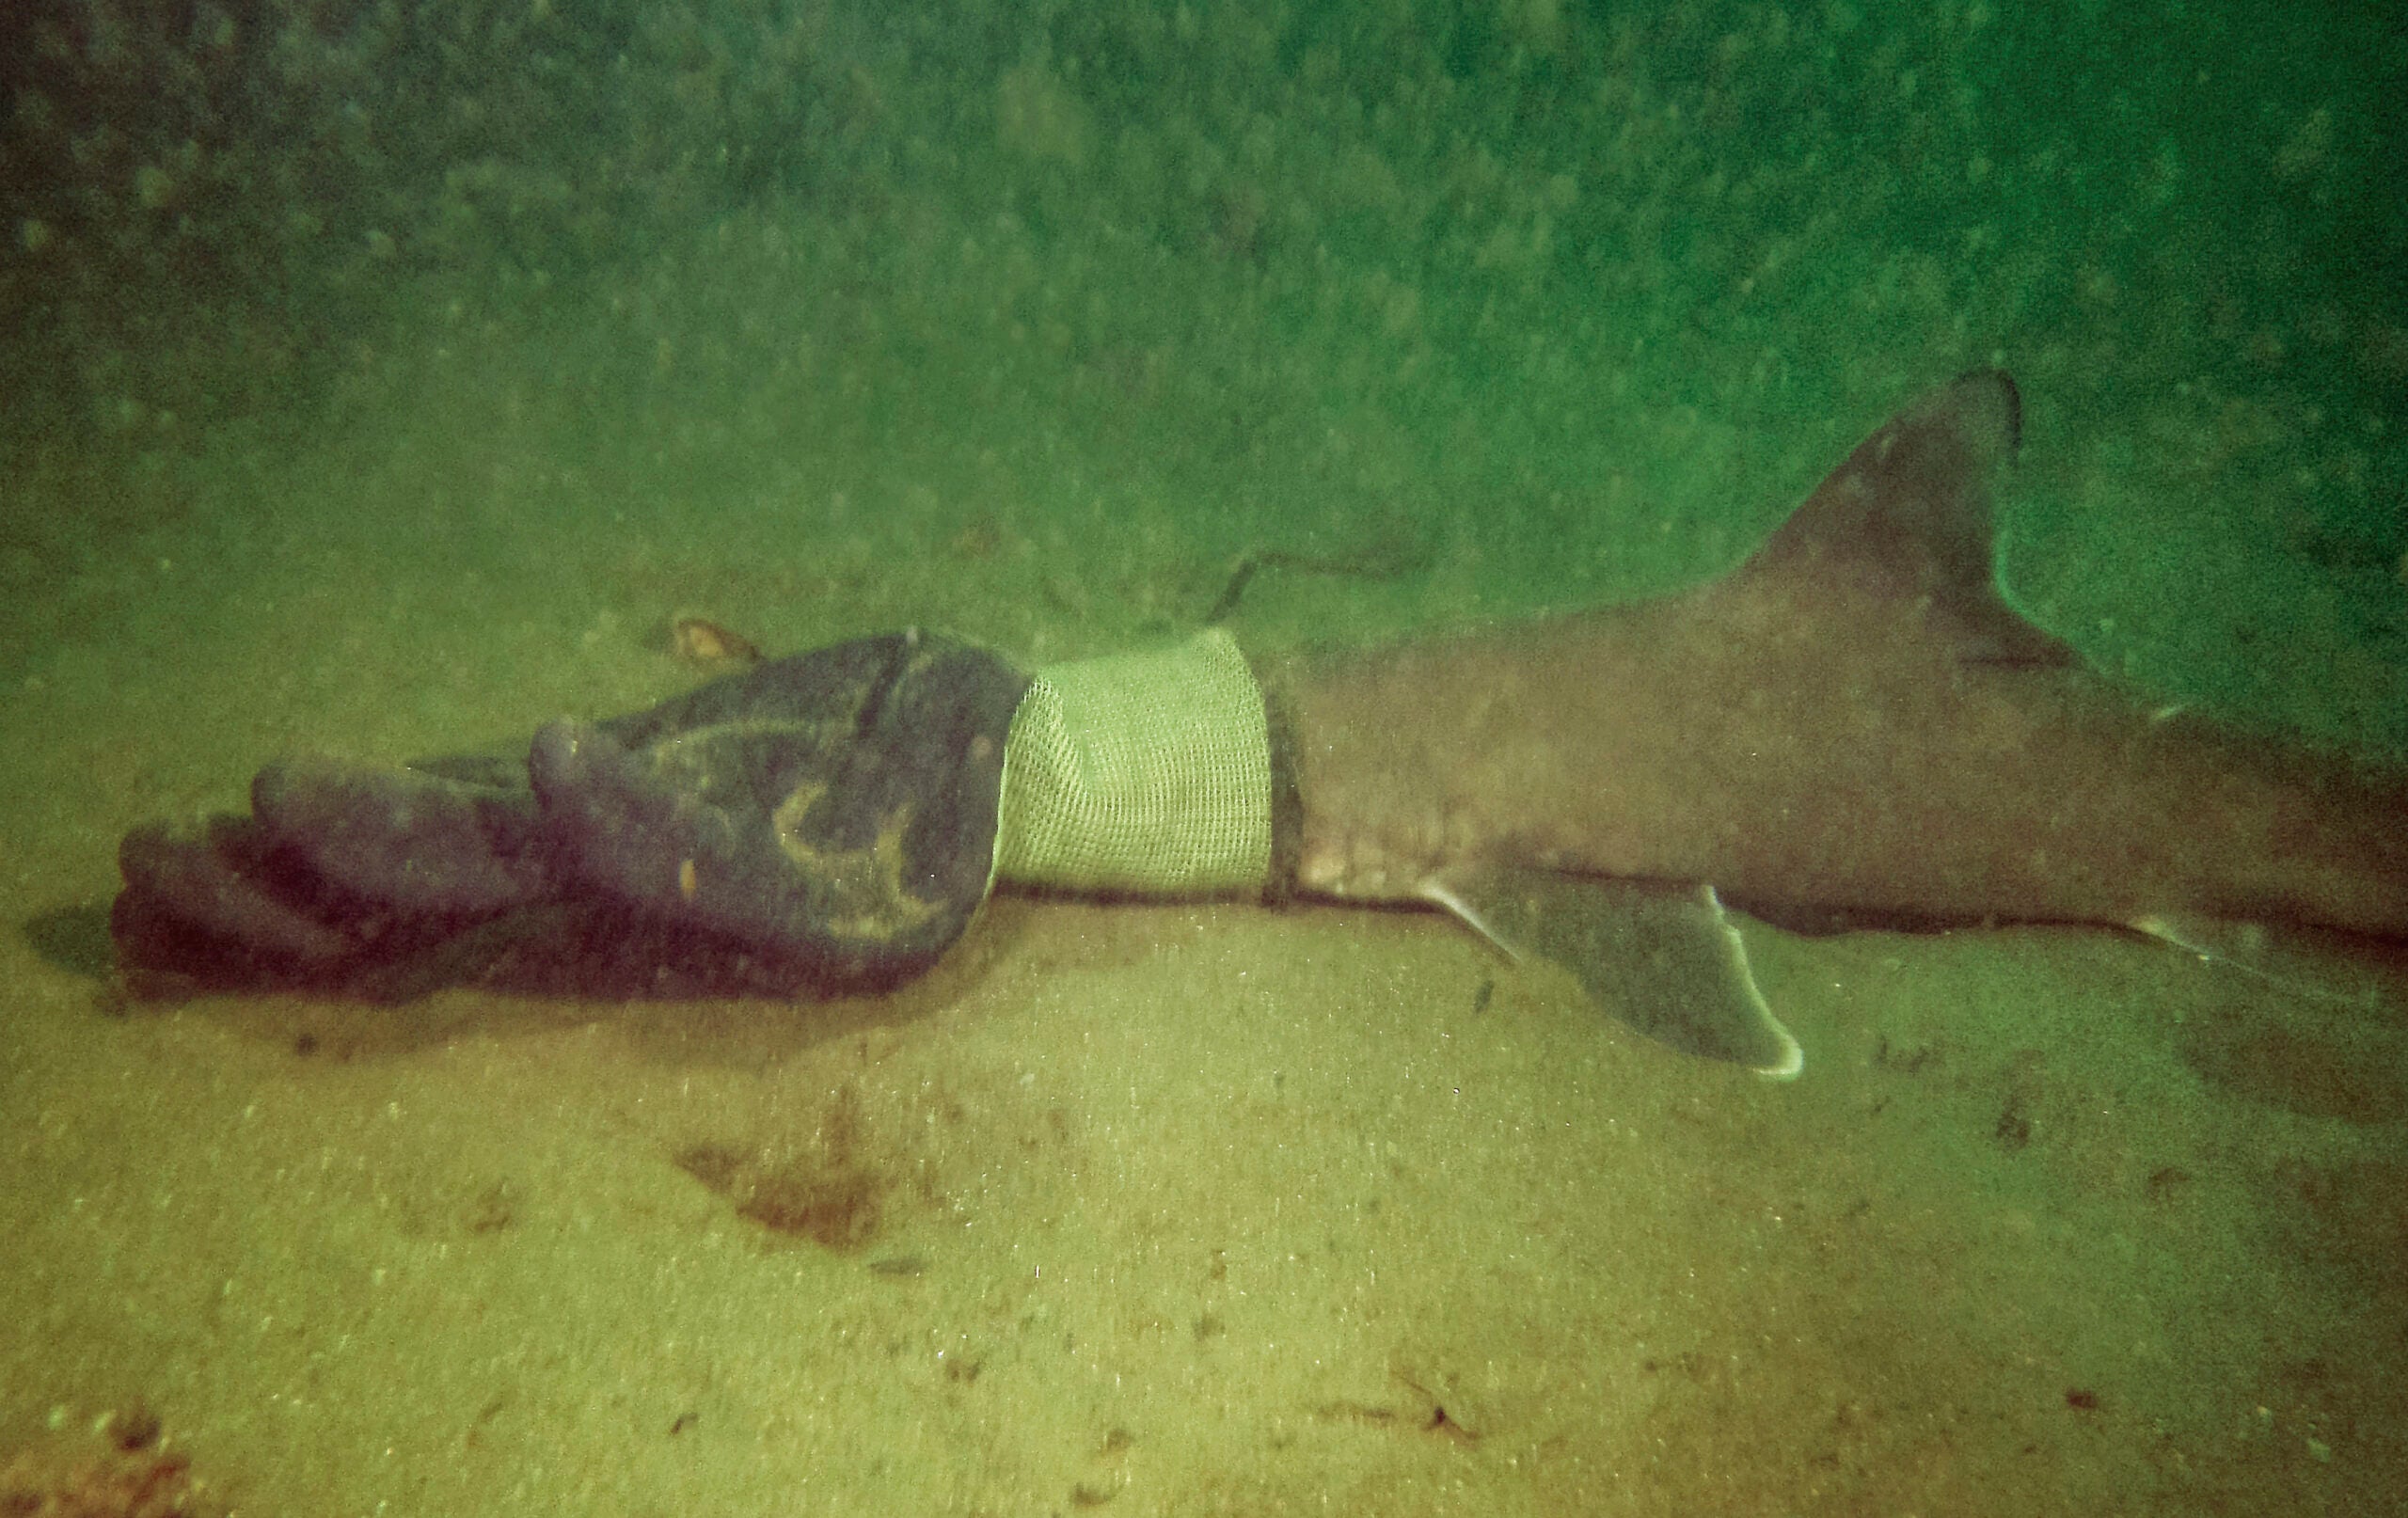 A baby shark stuck in a work glove.